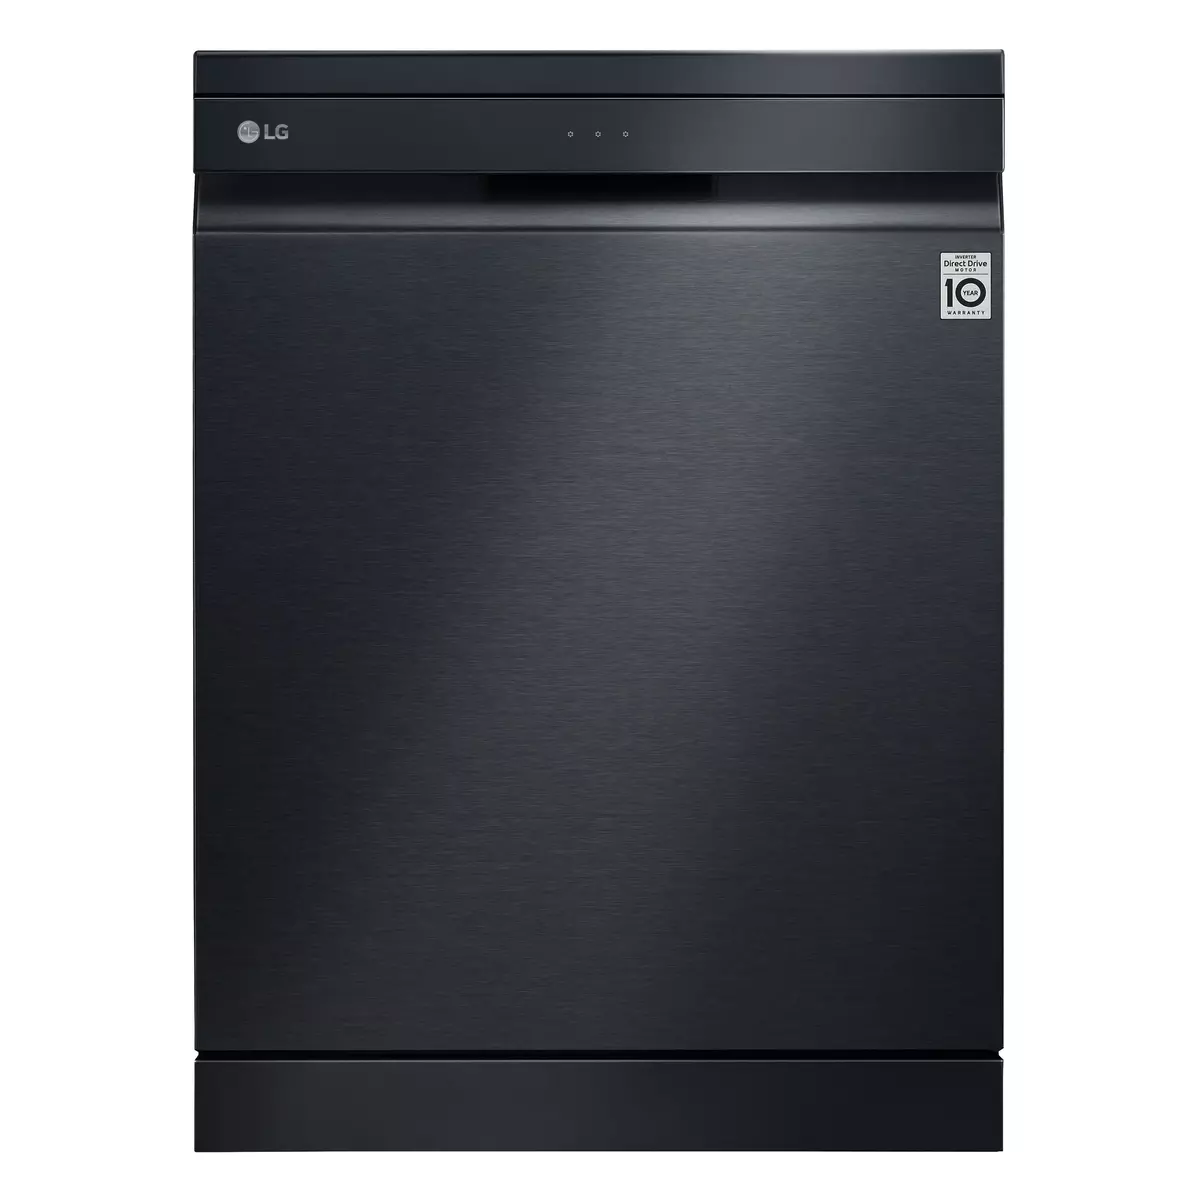 LG Lave vaisselle pose libre DF455HMS, 14 couverts, 60 cm, 41 dB, C